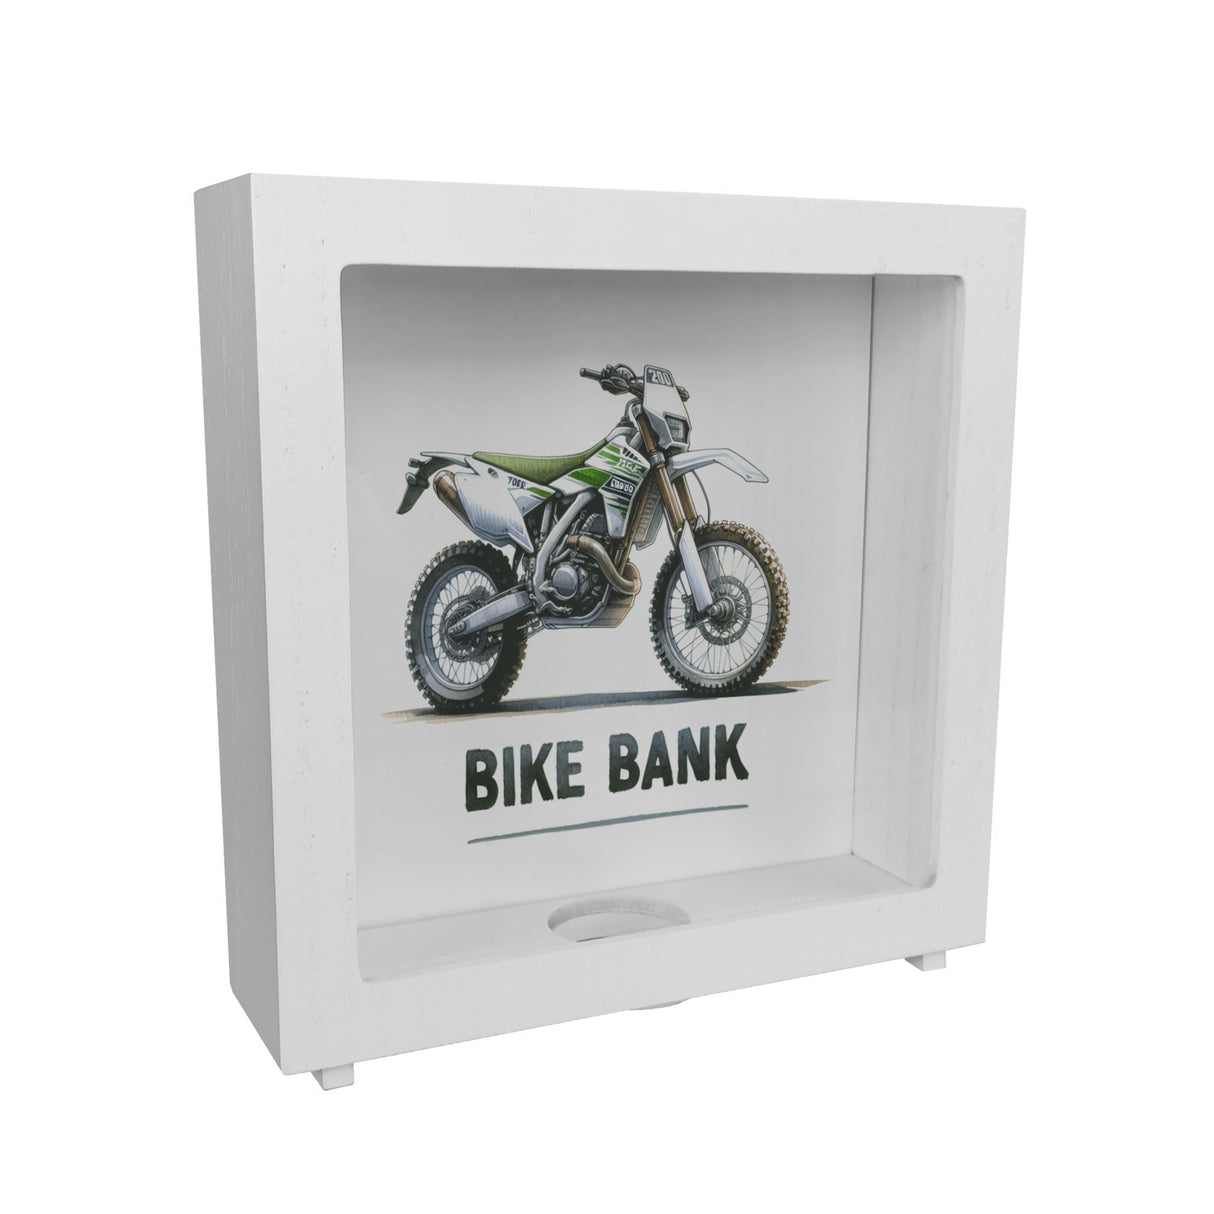 Enduro Motorrad Spardose mit Spruch Bike Bank